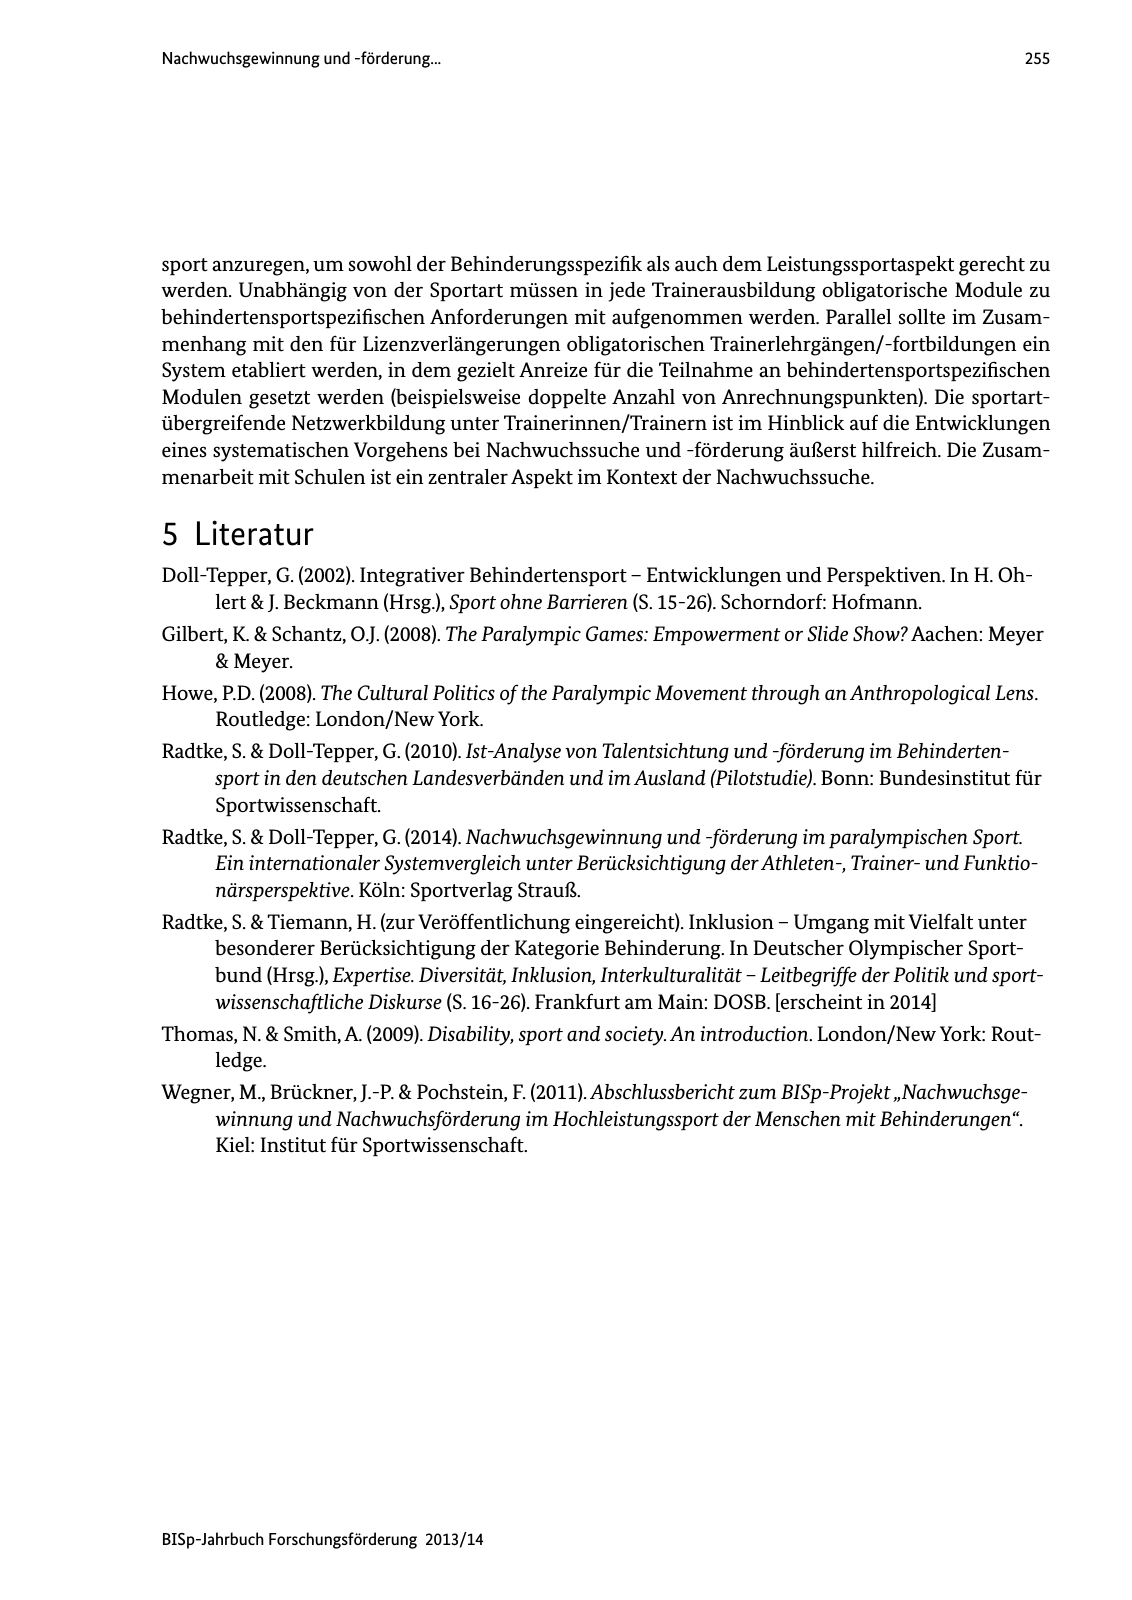 Vorschau BISp-Jahrbuch Forschungsförderung 2013/14 Seite 256